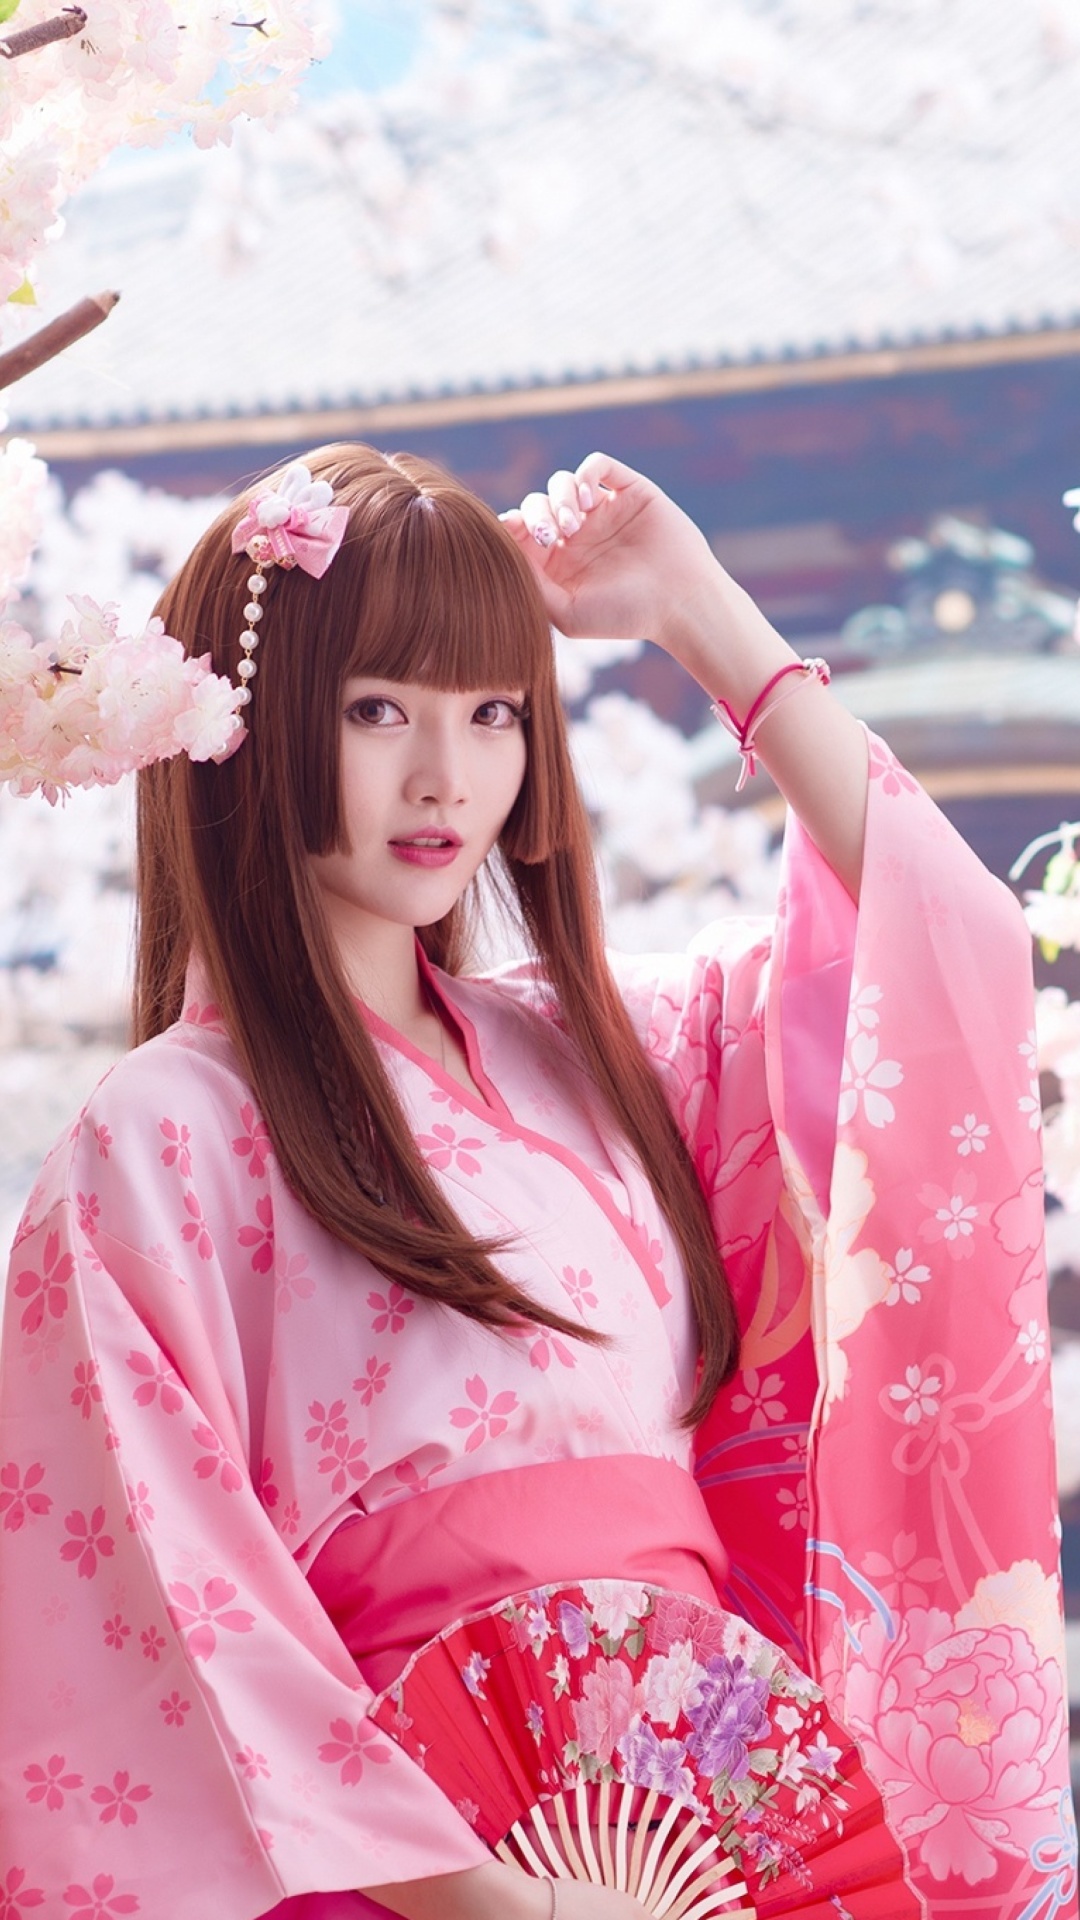 Das Japanese Girl in Kimono Wallpaper 1080x1920